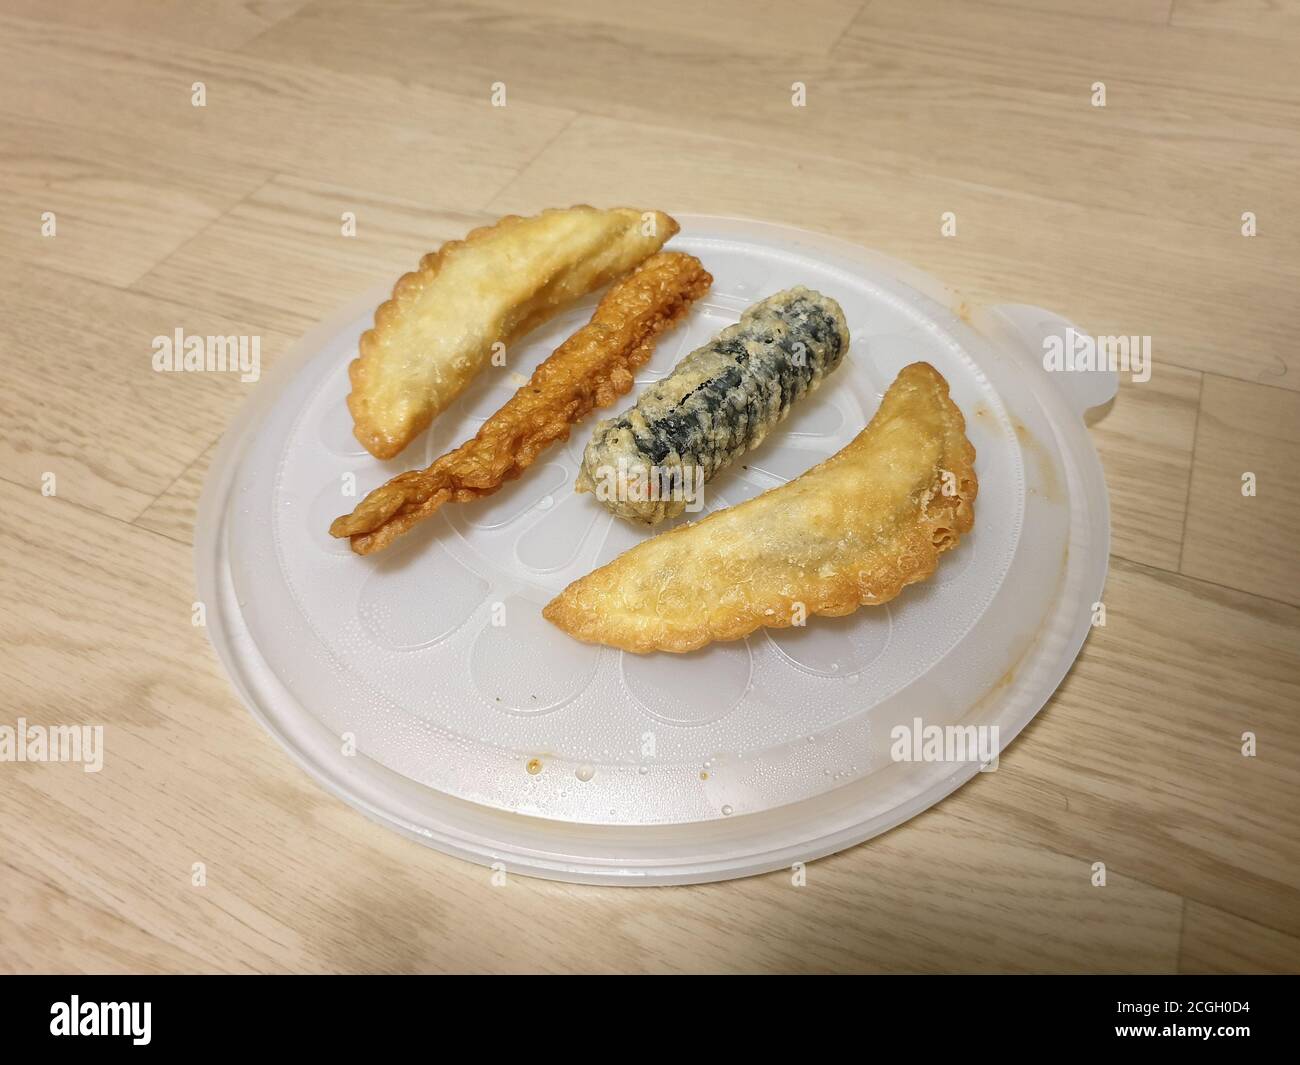 Twigim - cuisine coréenne frite. Mandu - déboulonnage coréen. Gimmari - rouleaux de printemps en algues farcis avec des nouilles en verre. Eomuk ou Oden - gâteau au poisson. Banque D'Images